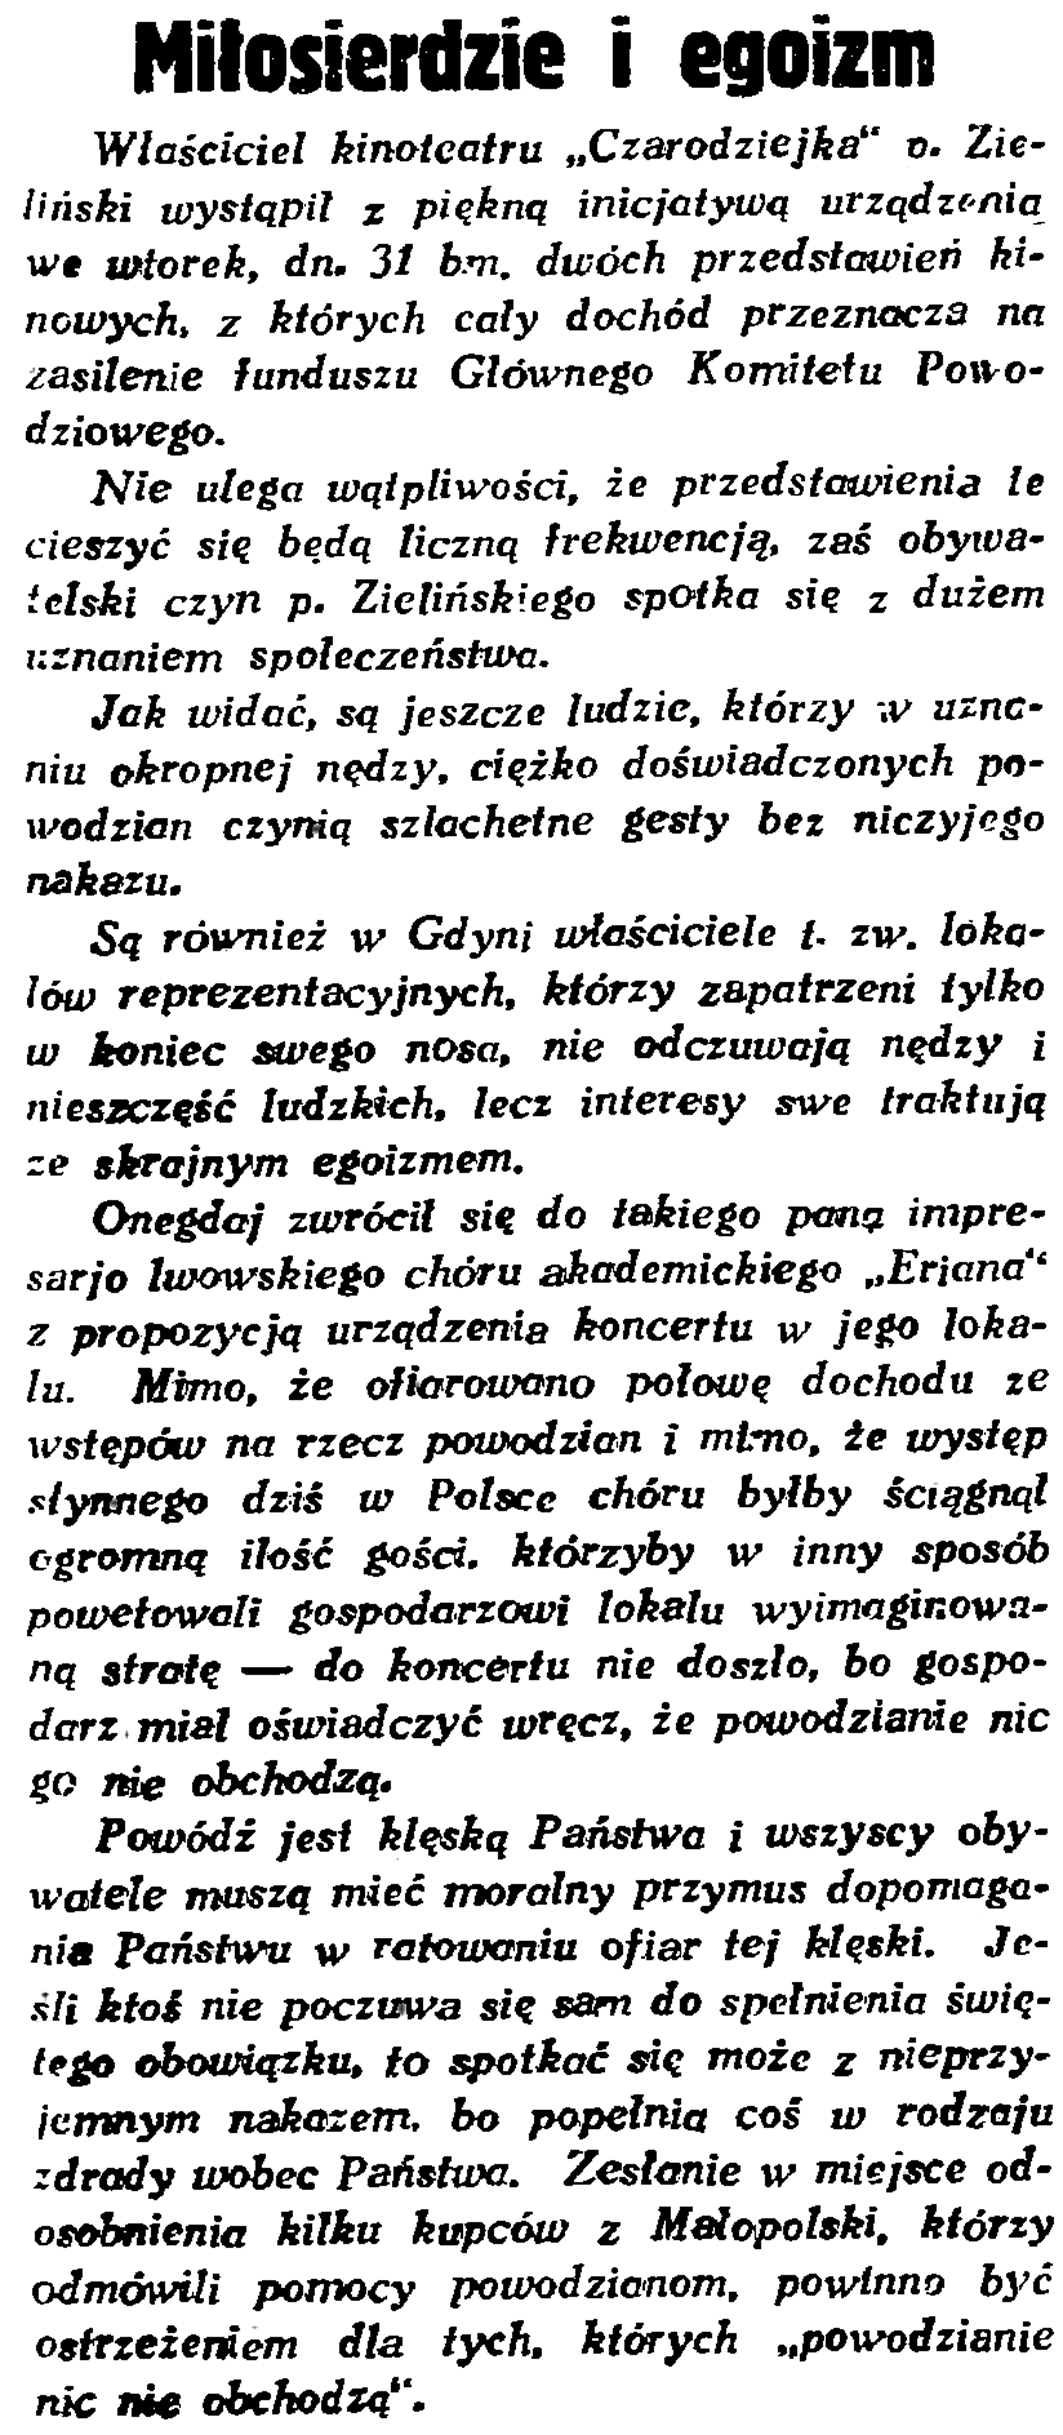 Miłosierdzie i egoizm // Gazeta Gdańska. - 1934, nr 170, s. 7